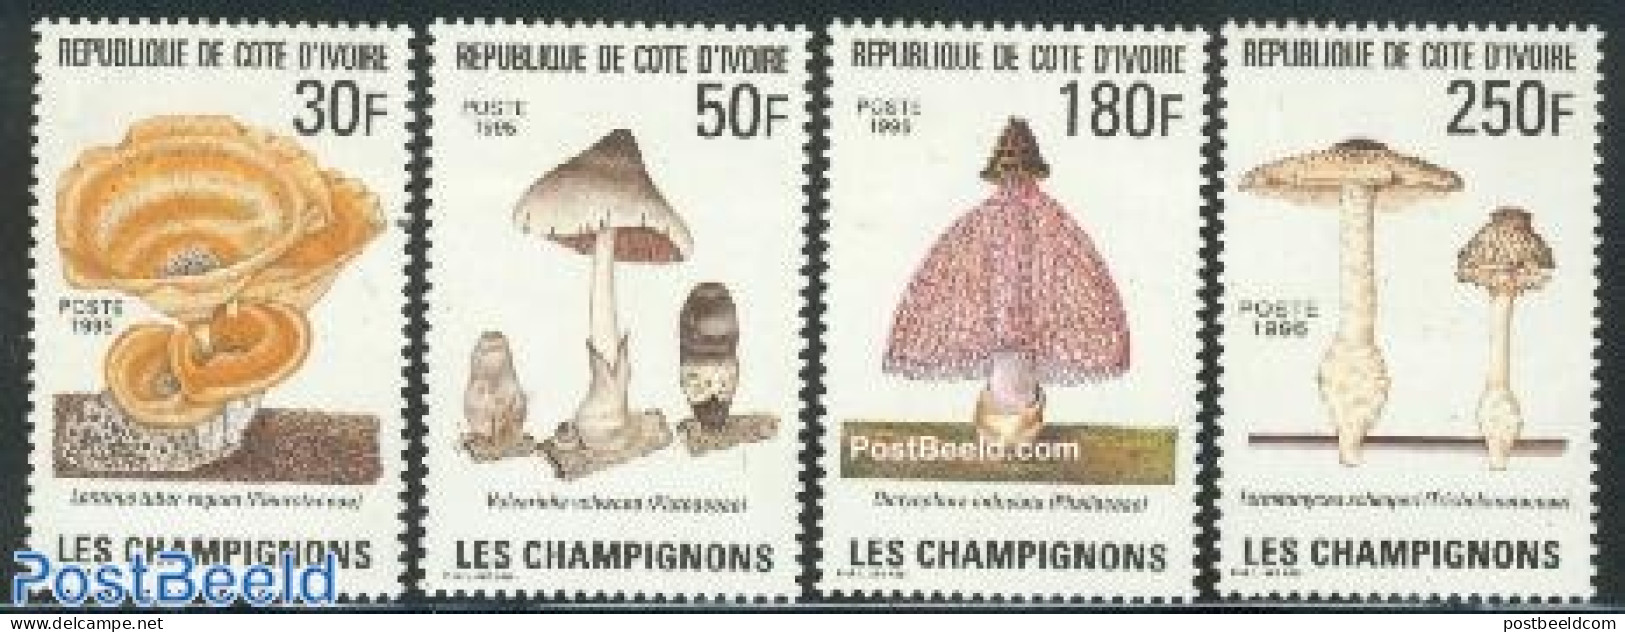 Ivory Coast 1995 Mushrooms 4v, Mint NH, Nature - Mushrooms - Unused Stamps